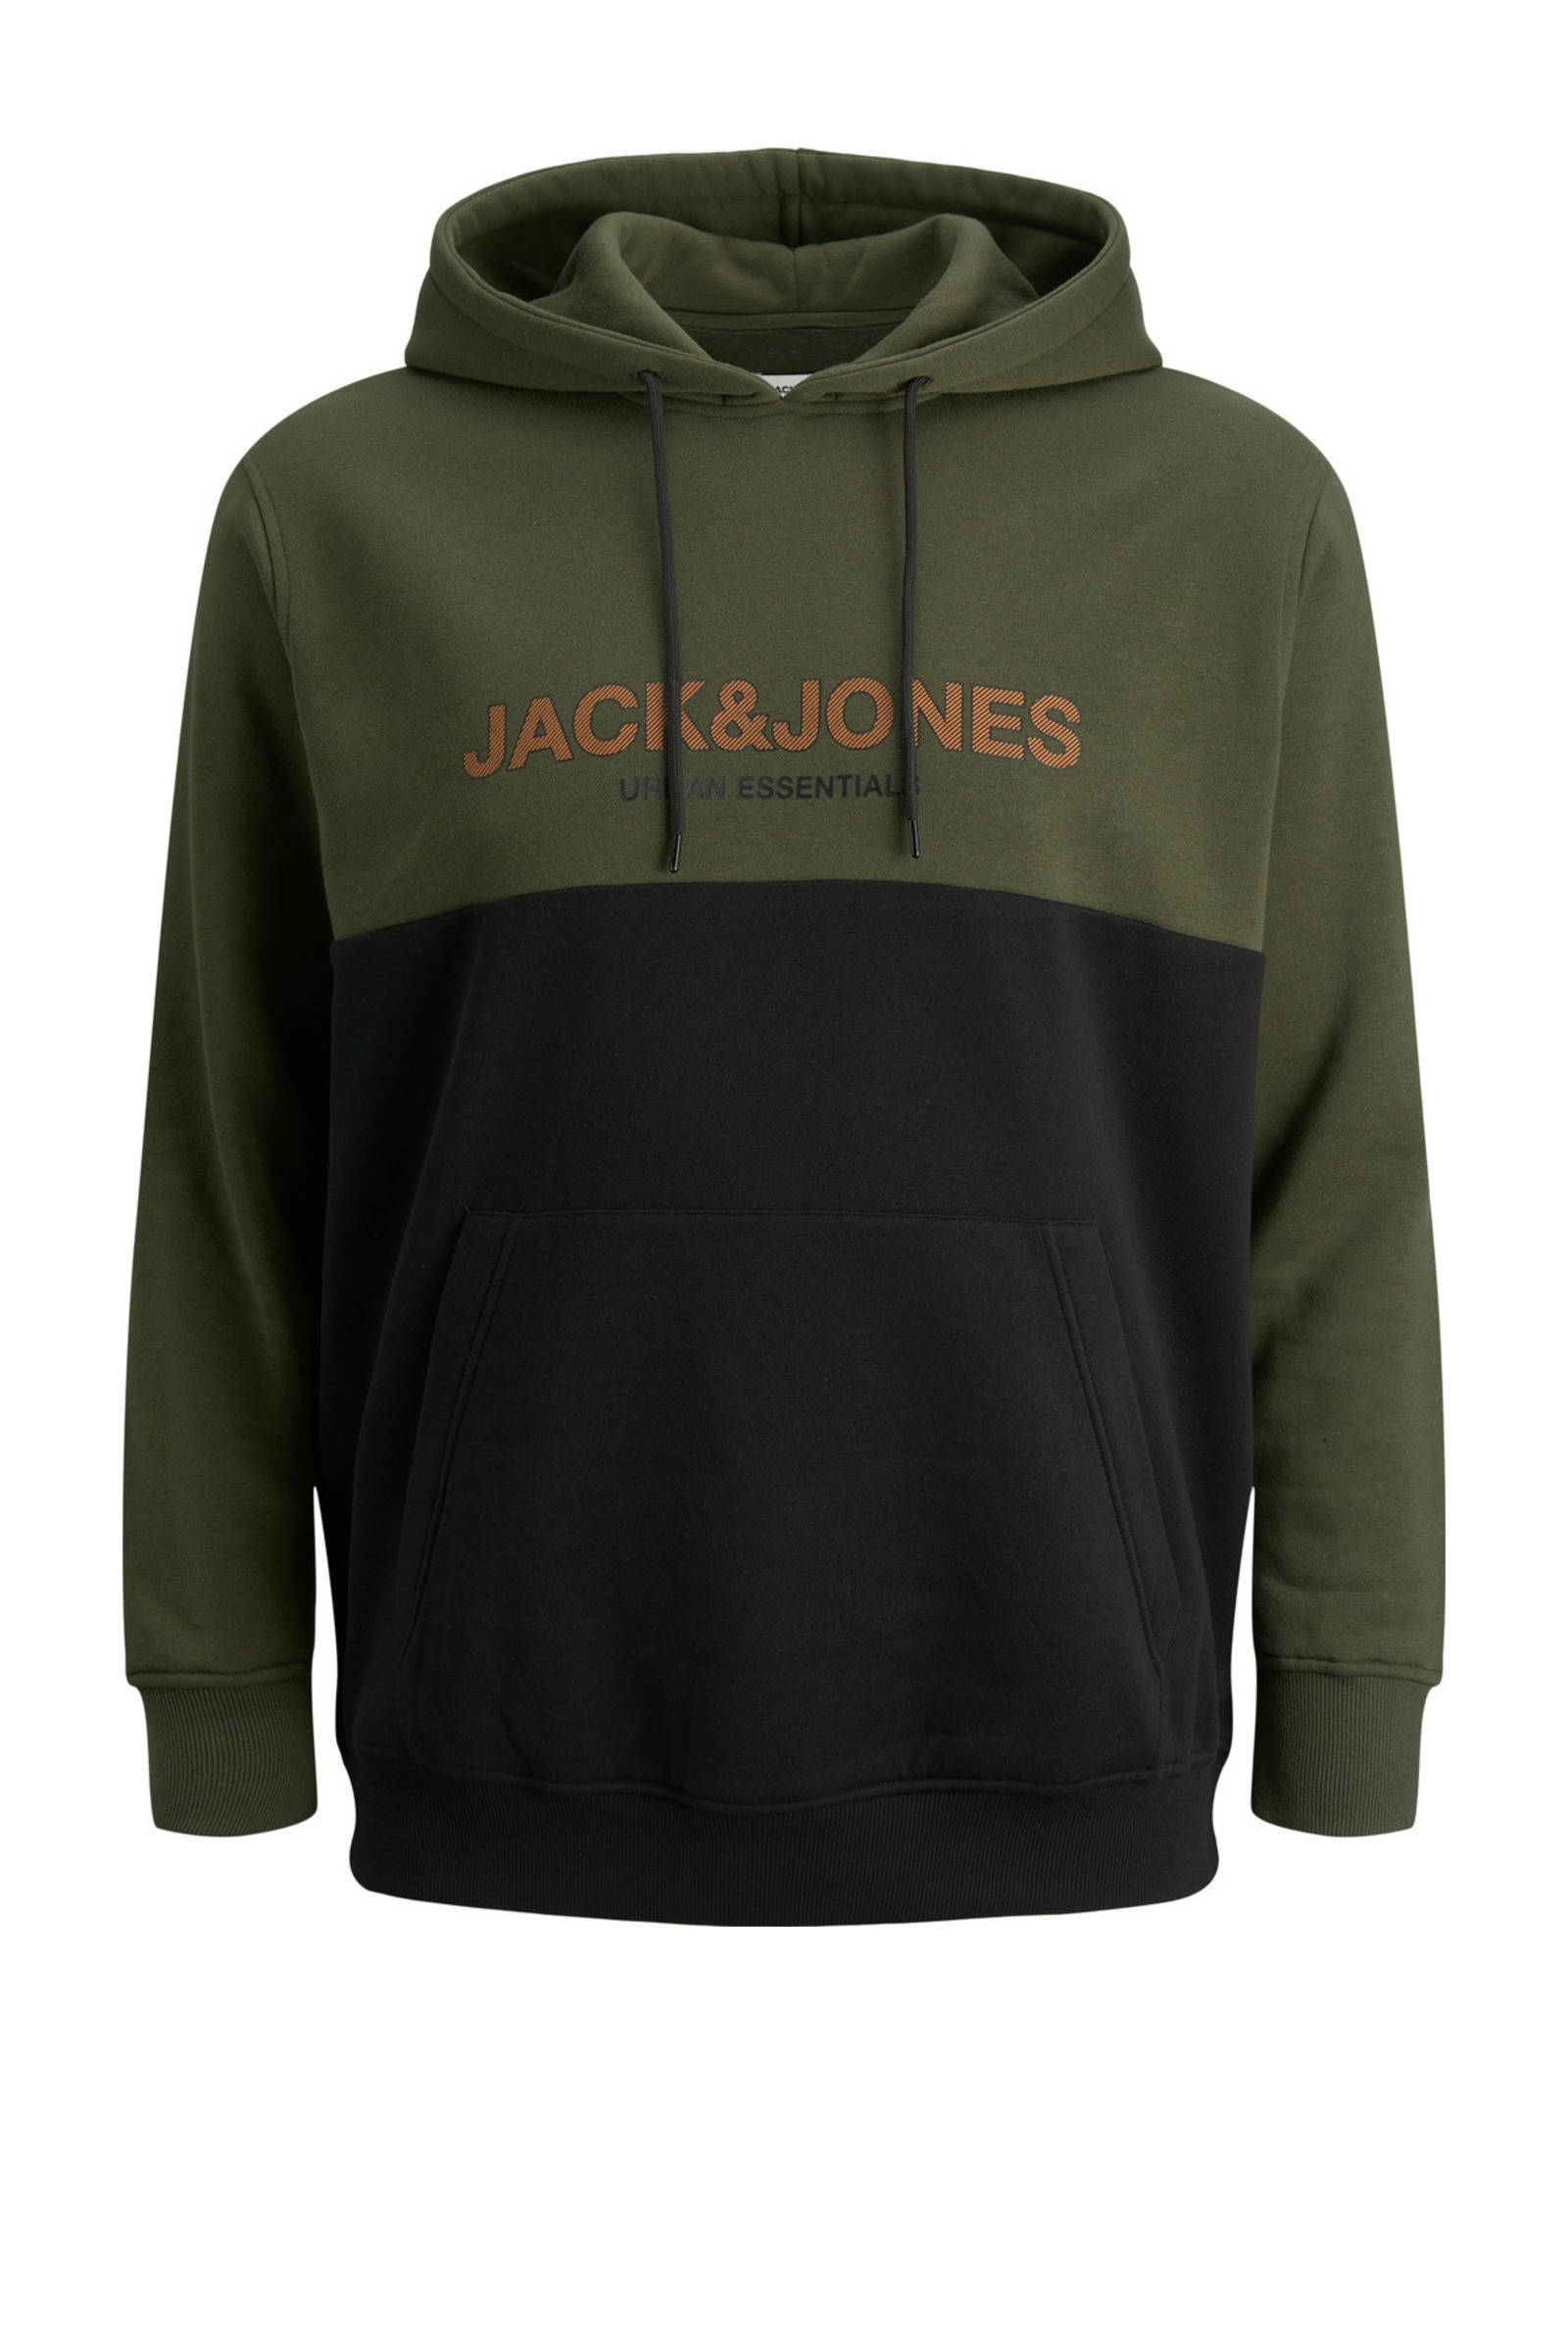 JACK & JONES PLUS SIZE hoodie JJEURBAN Plus Size met logo groen/zwart online kopen